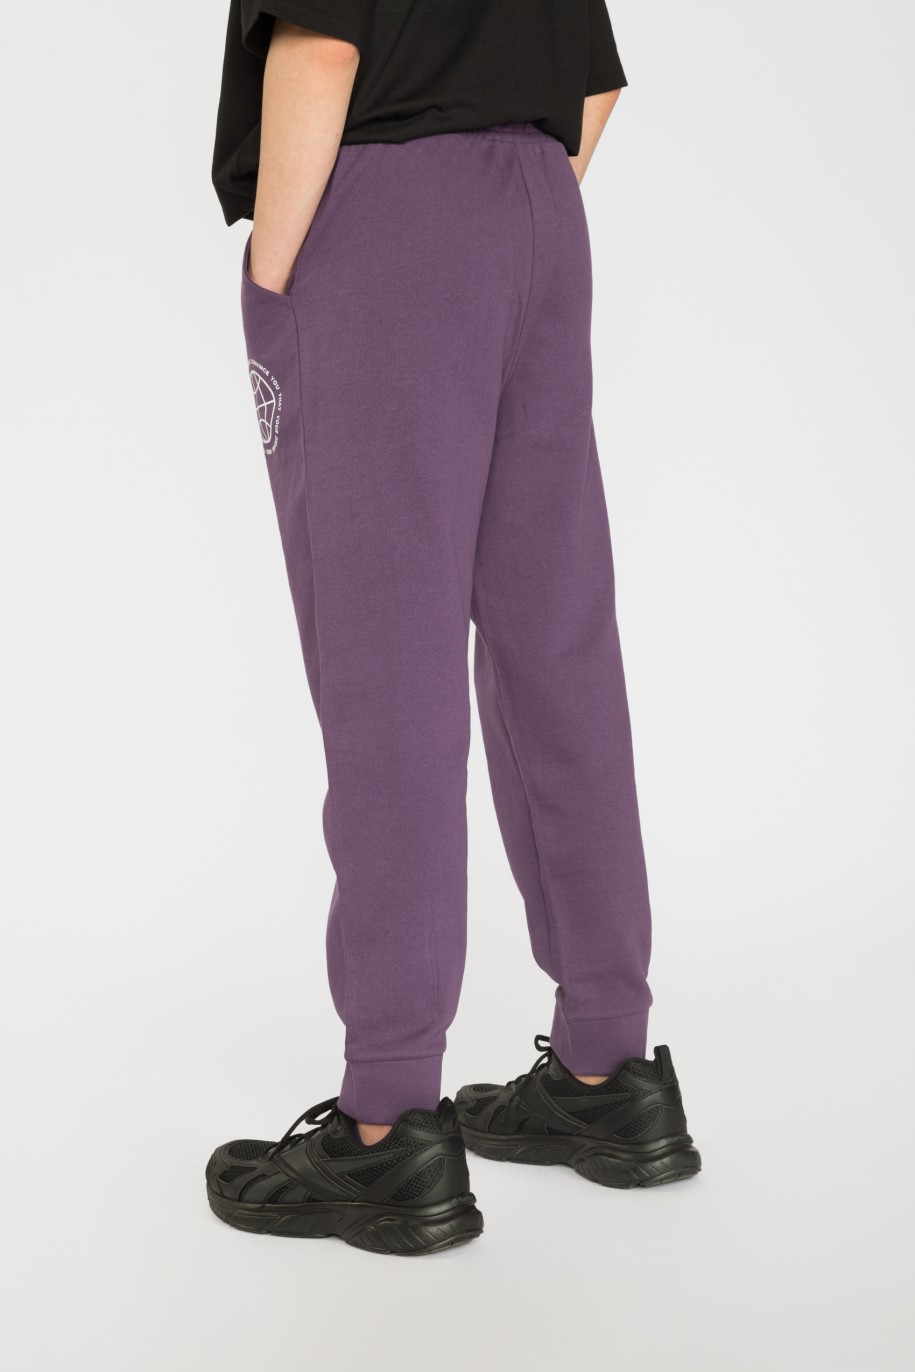 Fioletowe spodnie dresowe z nadrukiem - 35931